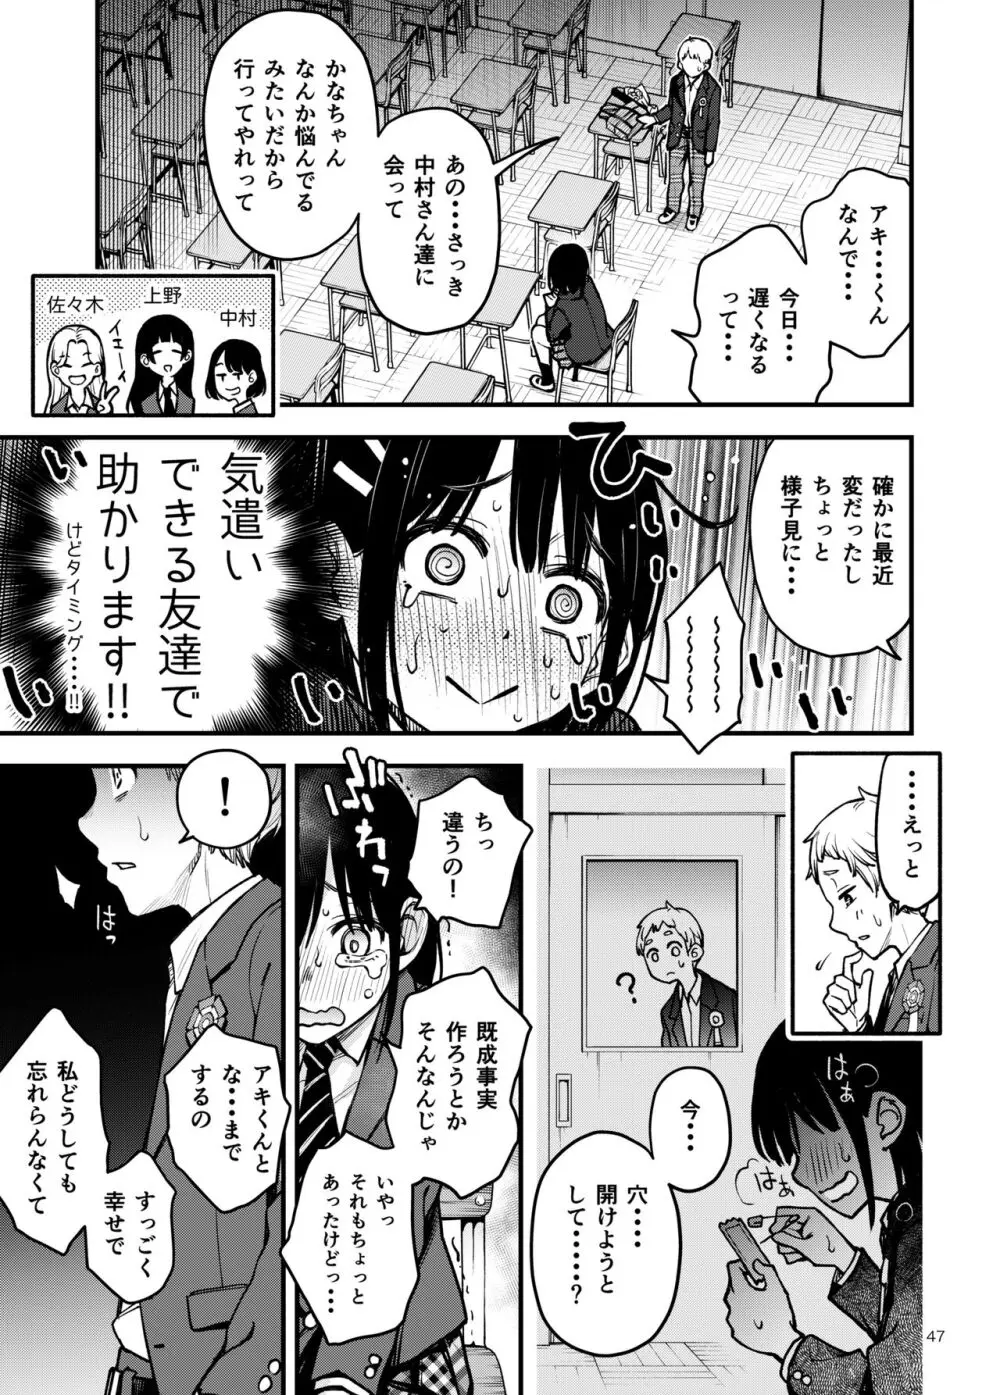 処女が童貞との初体験で目覚めちゃう話3 - page48